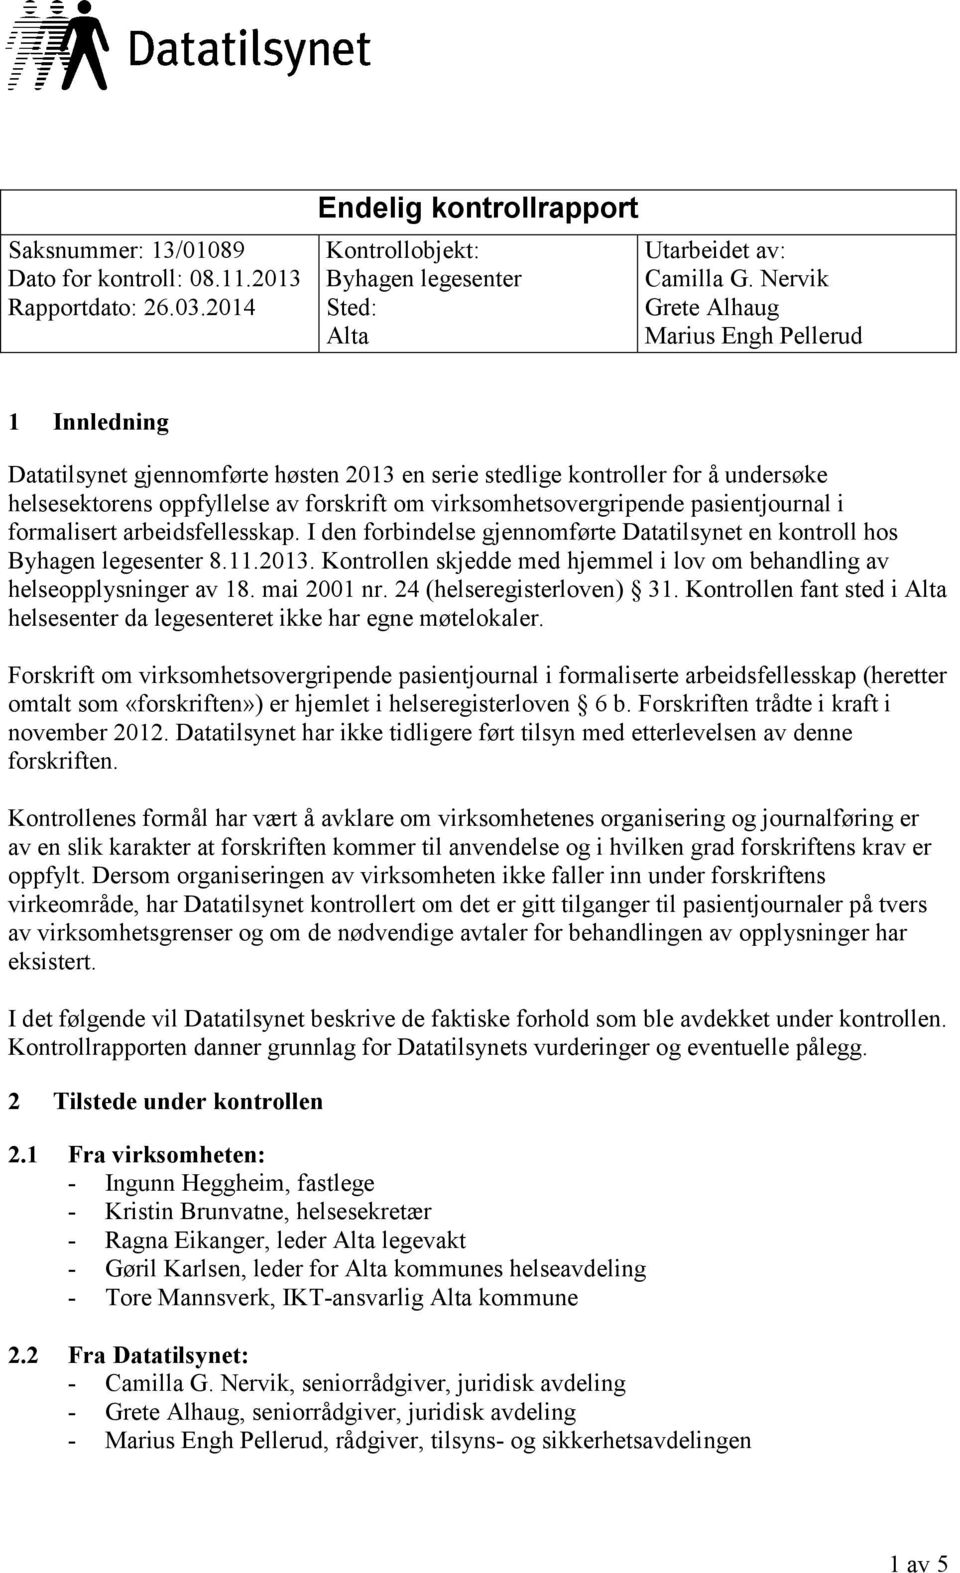 virksomhetsovergripende pasientjournal i formalisert arbeidsfellesskap. I den forbindelse gjennomførte Datatilsynet en kontroll hos Byhagen legesenter 8.11.2013.